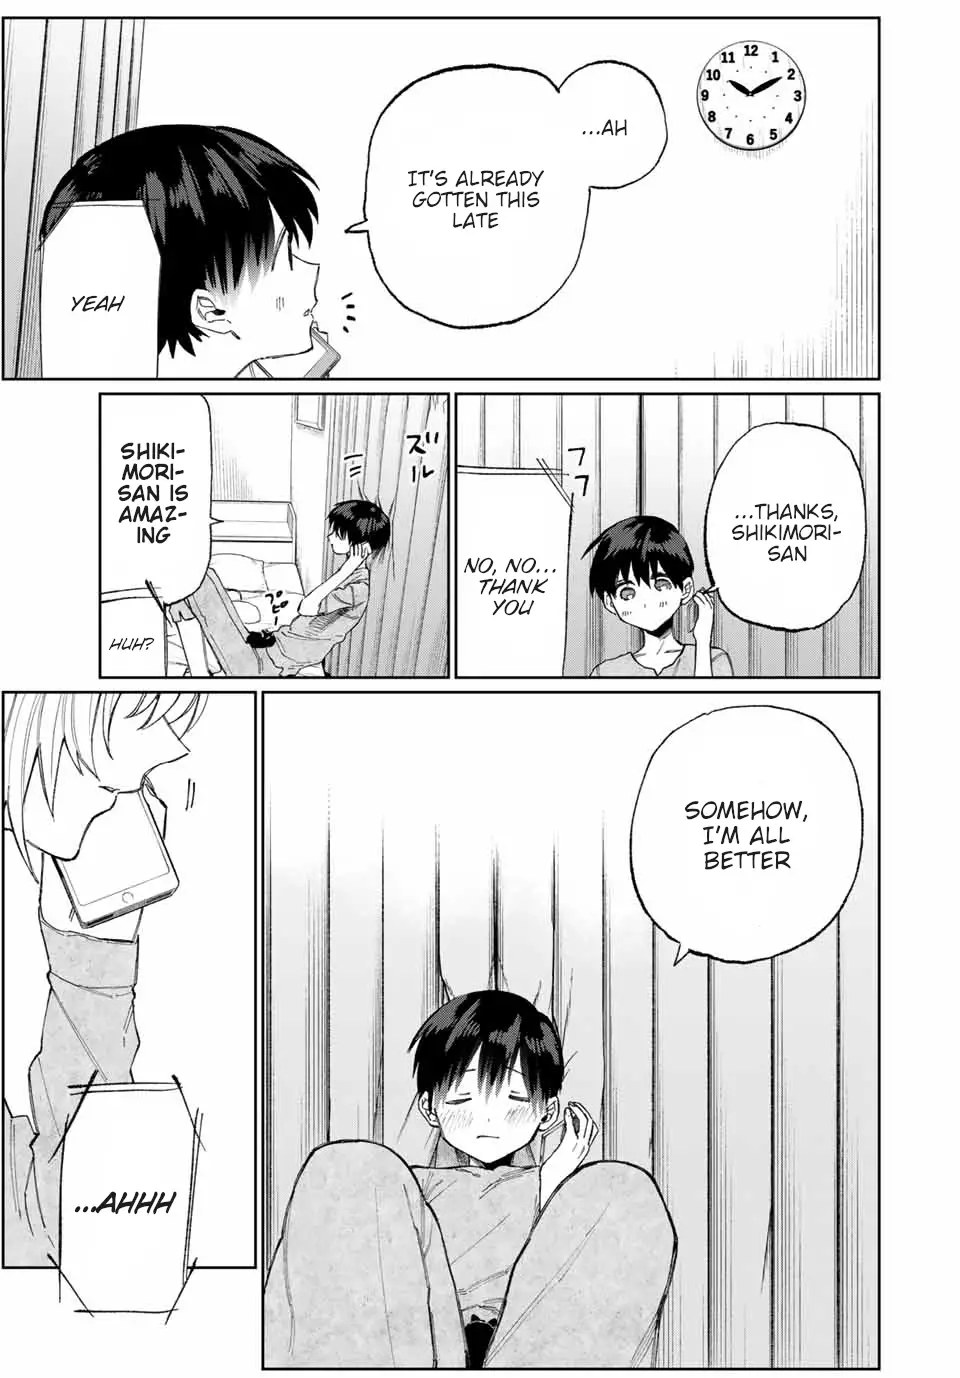 Shikimori's Not Just A Cutie - 28 page 8